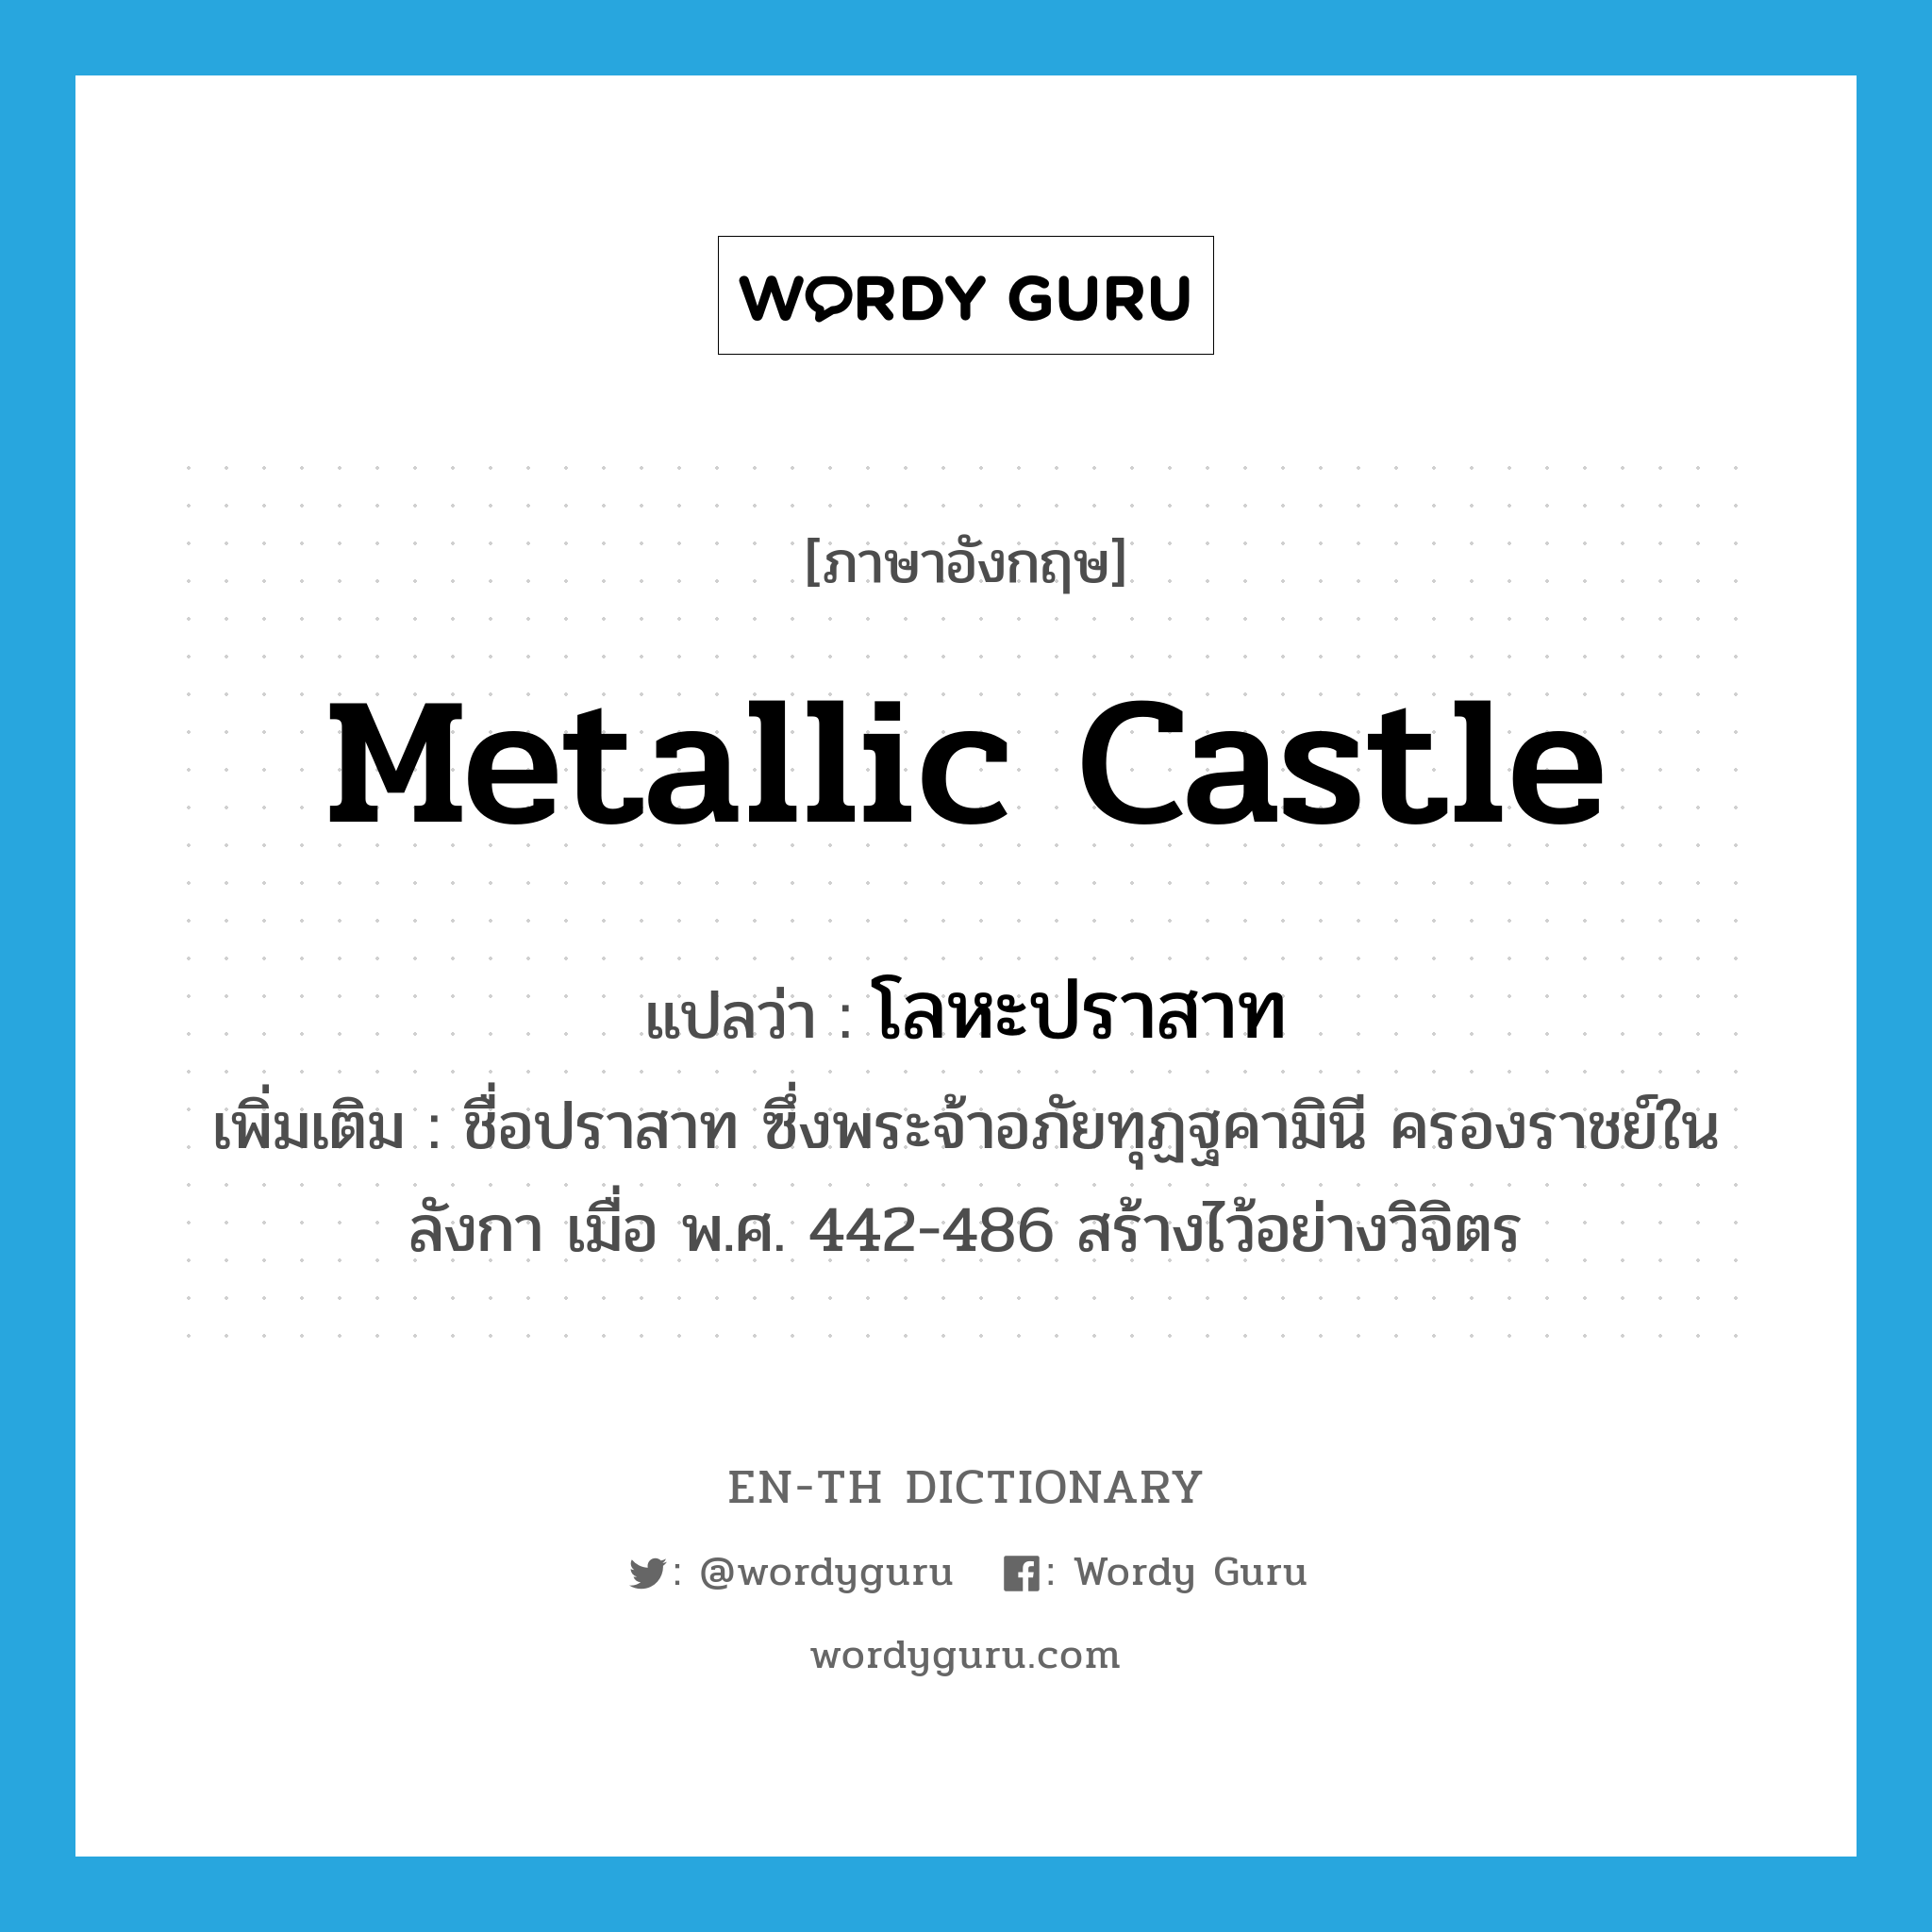 metallic castle แปลว่า?, คำศัพท์ภาษาอังกฤษ metallic castle แปลว่า โลหะปราสาท ประเภท N เพิ่มเติม ชื่อปราสาท ซึ่งพระจ้าอภัยทุฏฐคามินี ครองราชย์ในลังกา เมื่อ พ.ศ. 442-486 สร้างไว้อย่างวิจิตร หมวด N